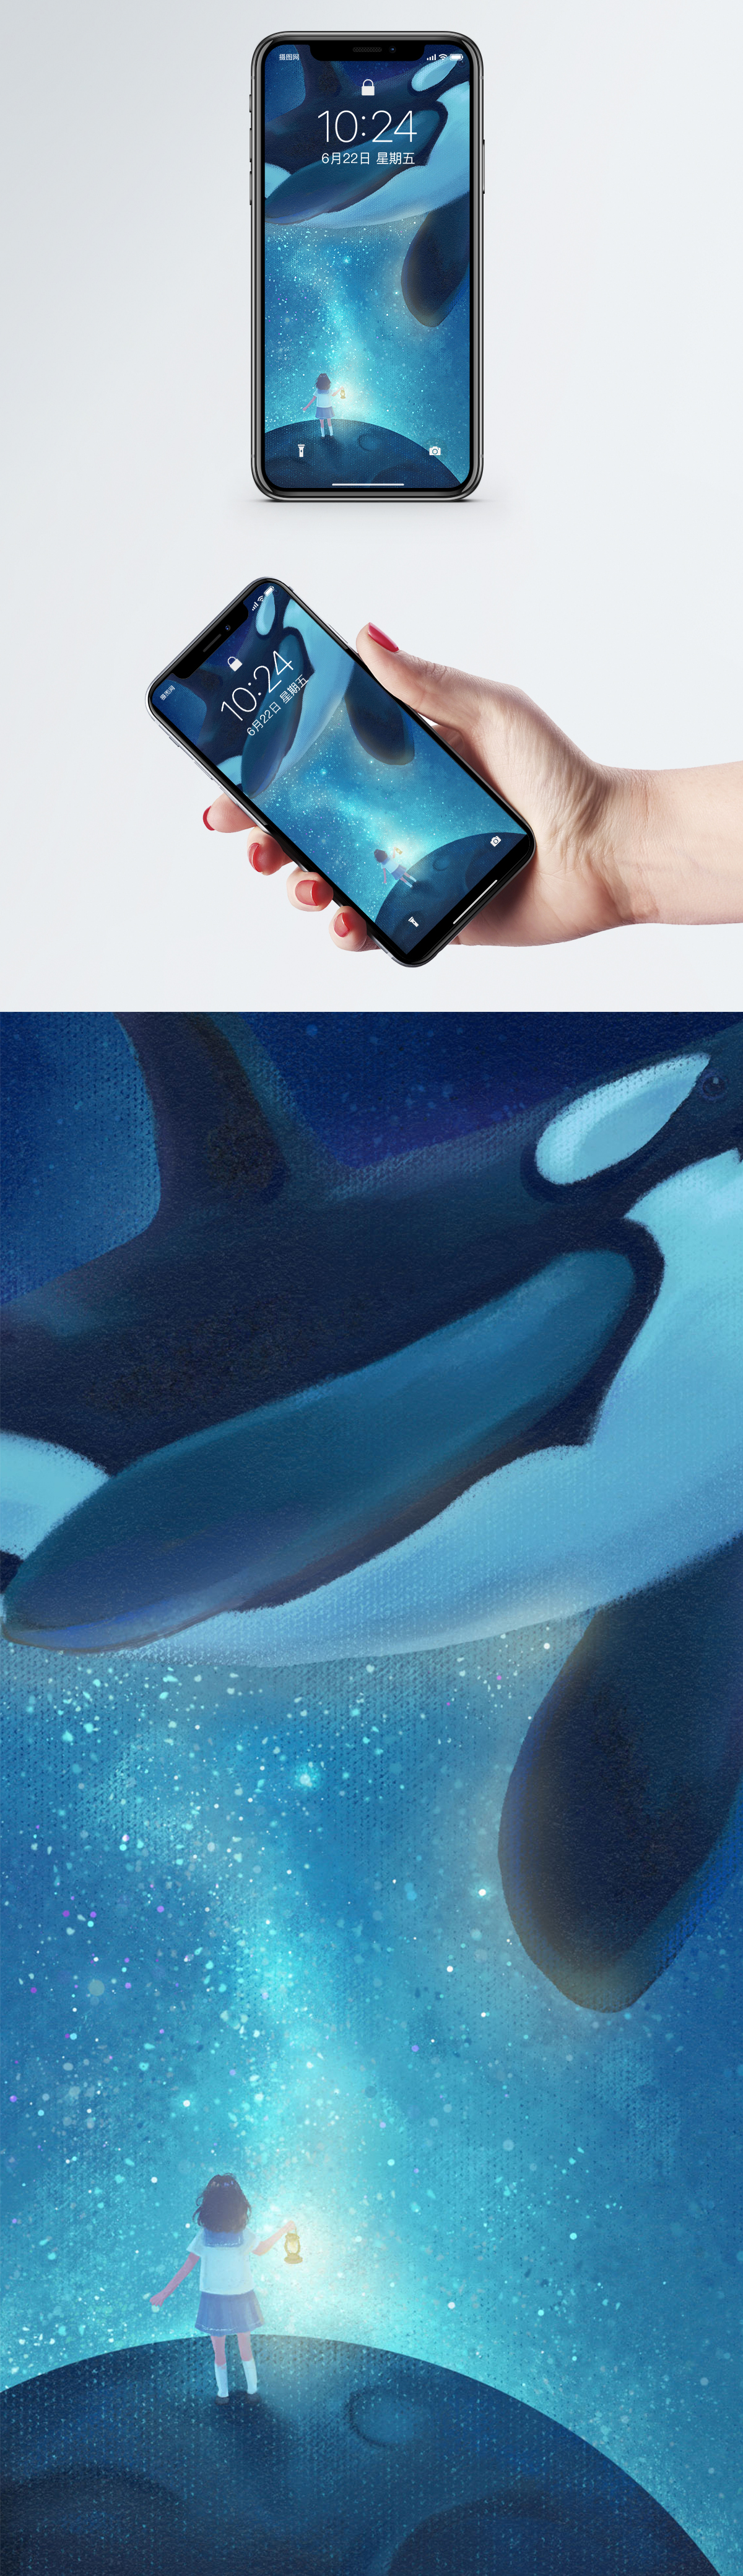 少女とクジラのモバイル壁紙イメージ 背景 Id 400322740 Prf画像フォーマットjpg Jp Lovepik Com